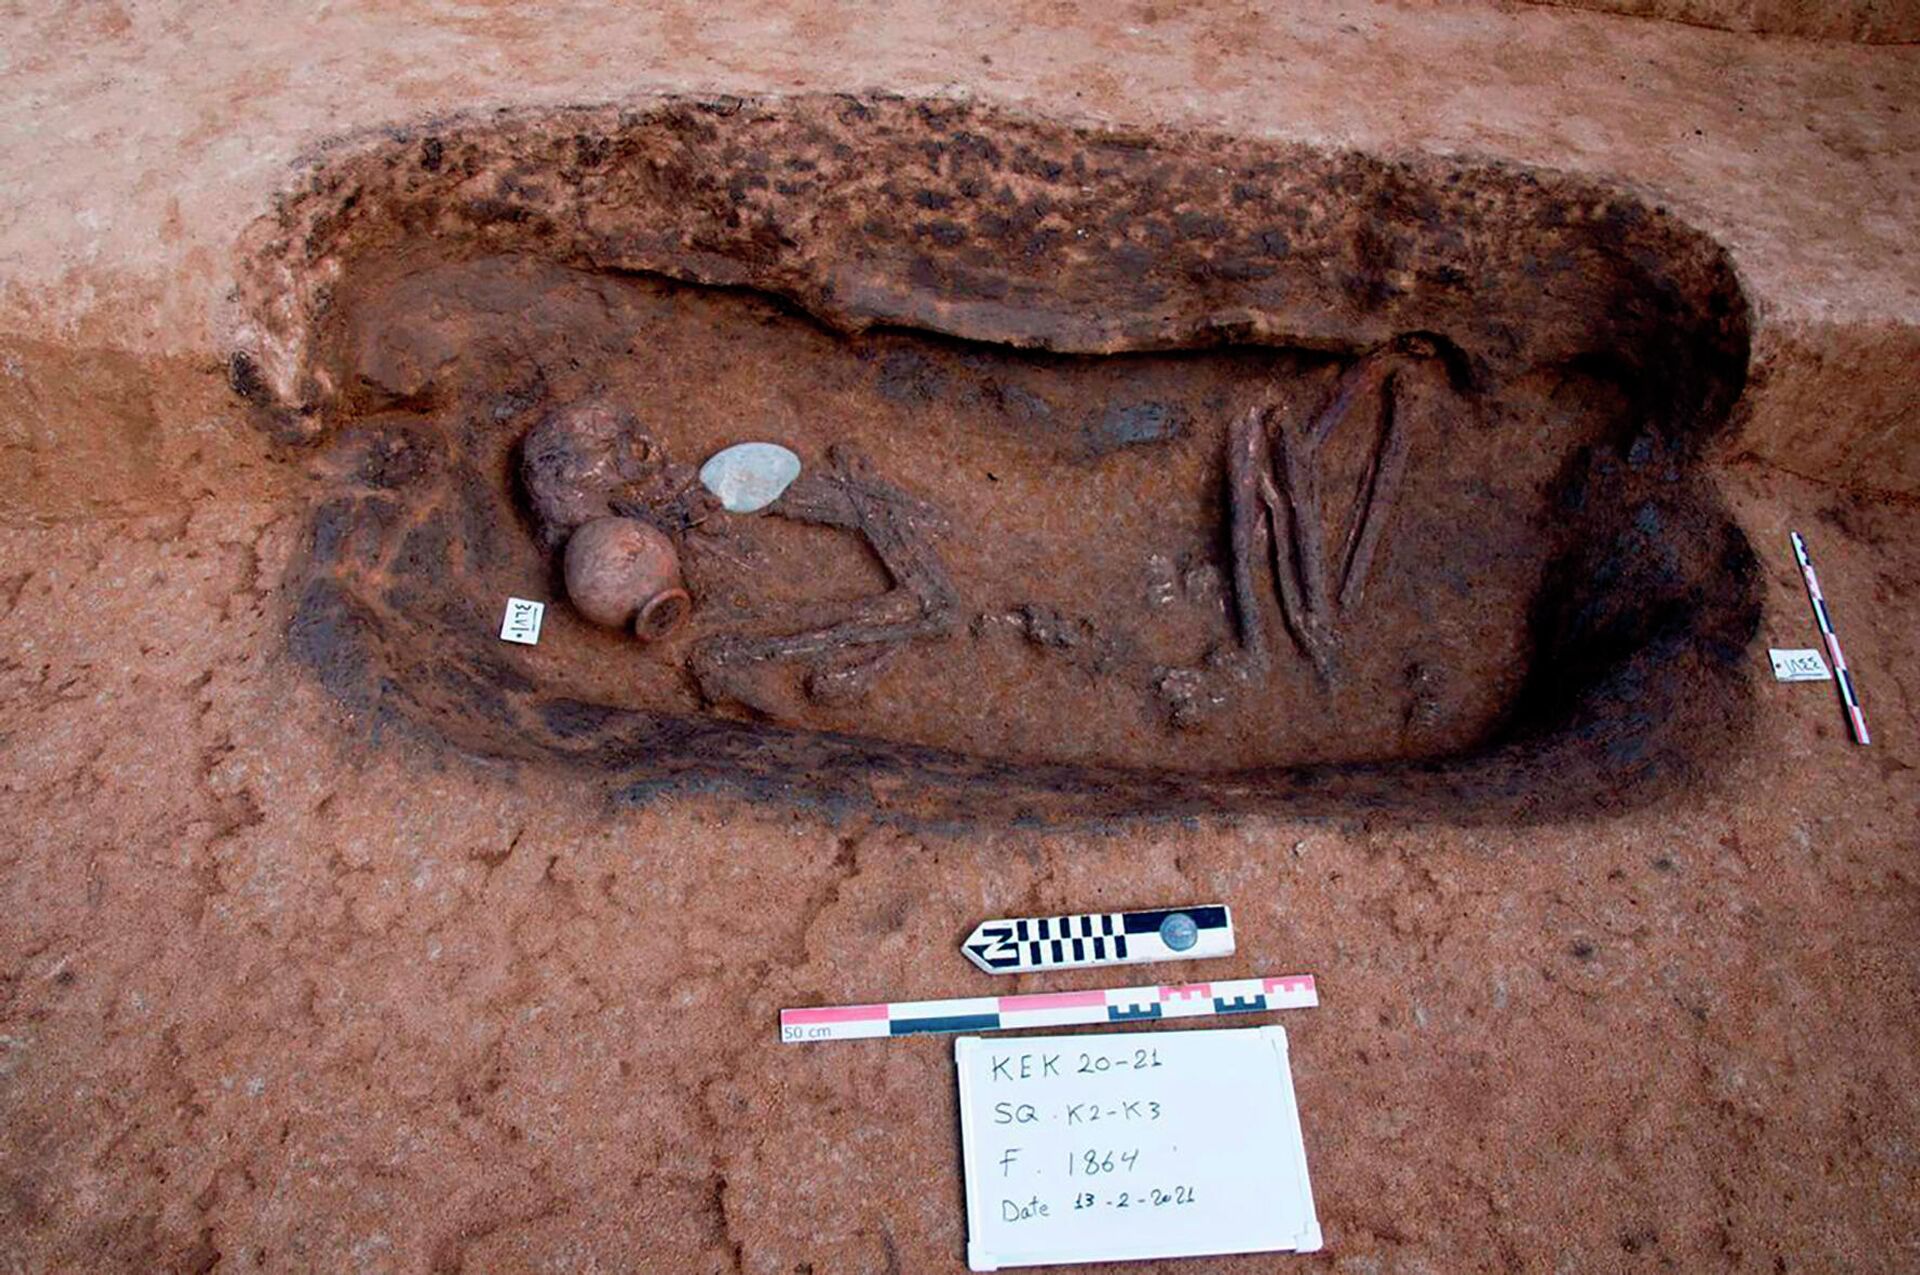 Tumbas en el sitio arqueológico de Koum el-Khulgan en el Delta del Nilo - Sputnik Mundo, 1920, 29.04.2021